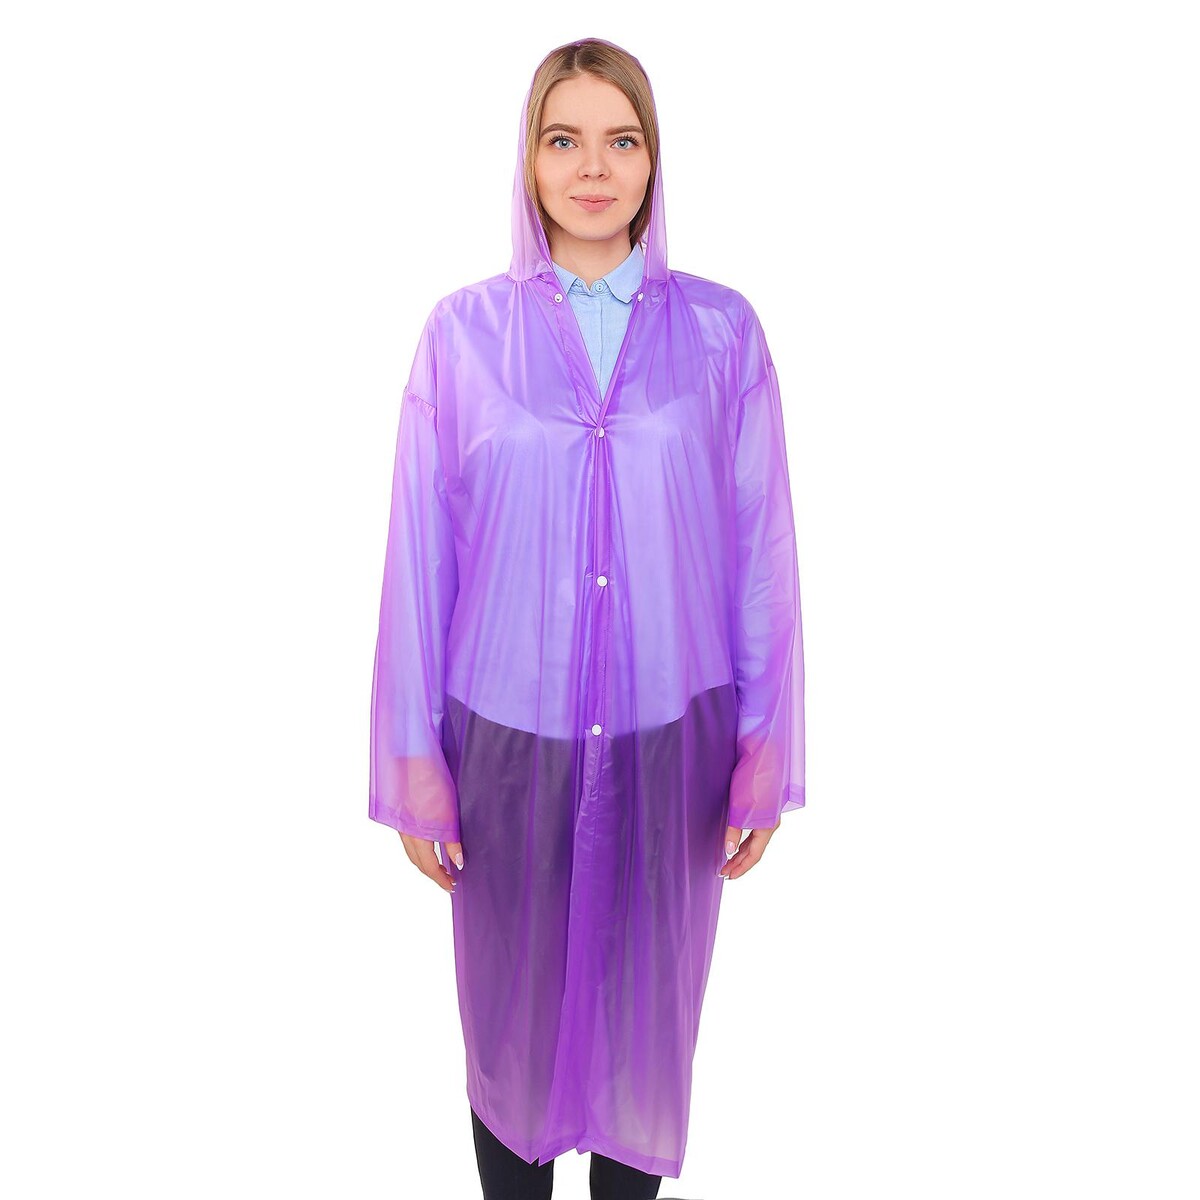 Дождевик-плащ взрослый, универсальный, цвет фиолетовый игрушка водная yookidoo зонтик павлин создай дождь фиолетовый